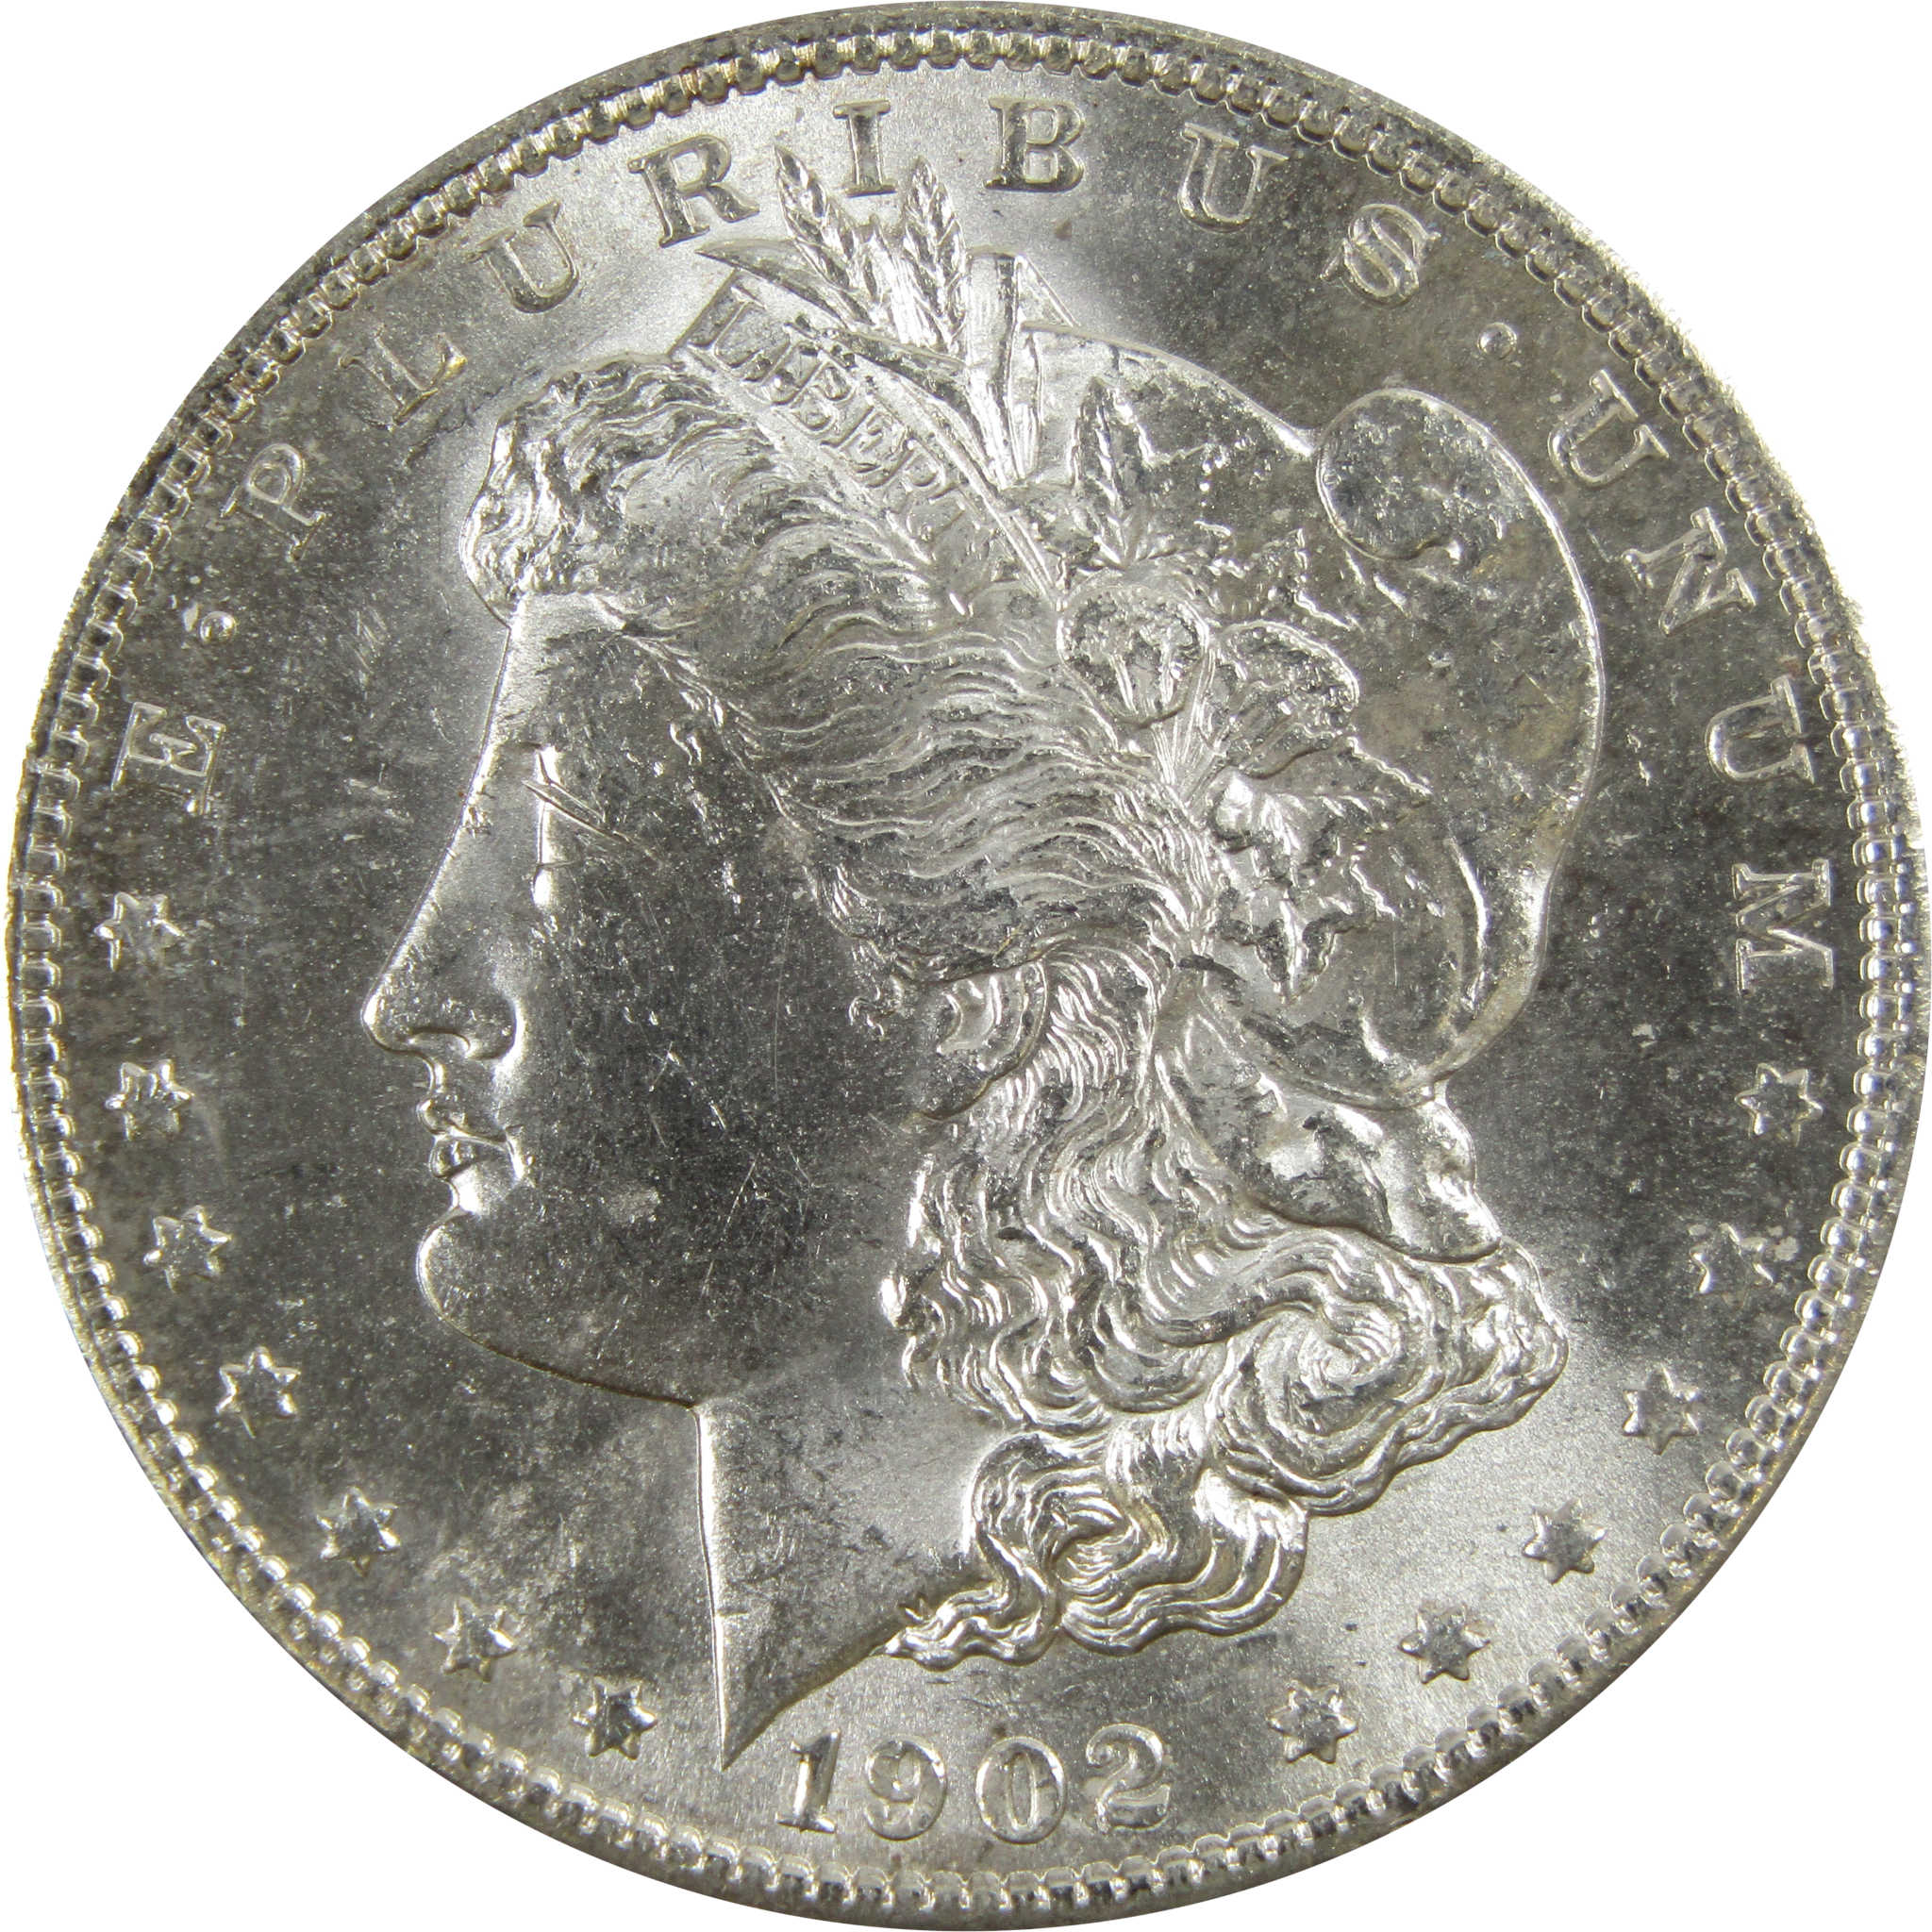 1902 O Morgan Dollar BU Uncirculated 90% Silver $1 Coin SKU:I5218 - Morgan coin - Morgan silver dollar - Morgan silver dollar for sale - Profile Coins &amp; Collectibles